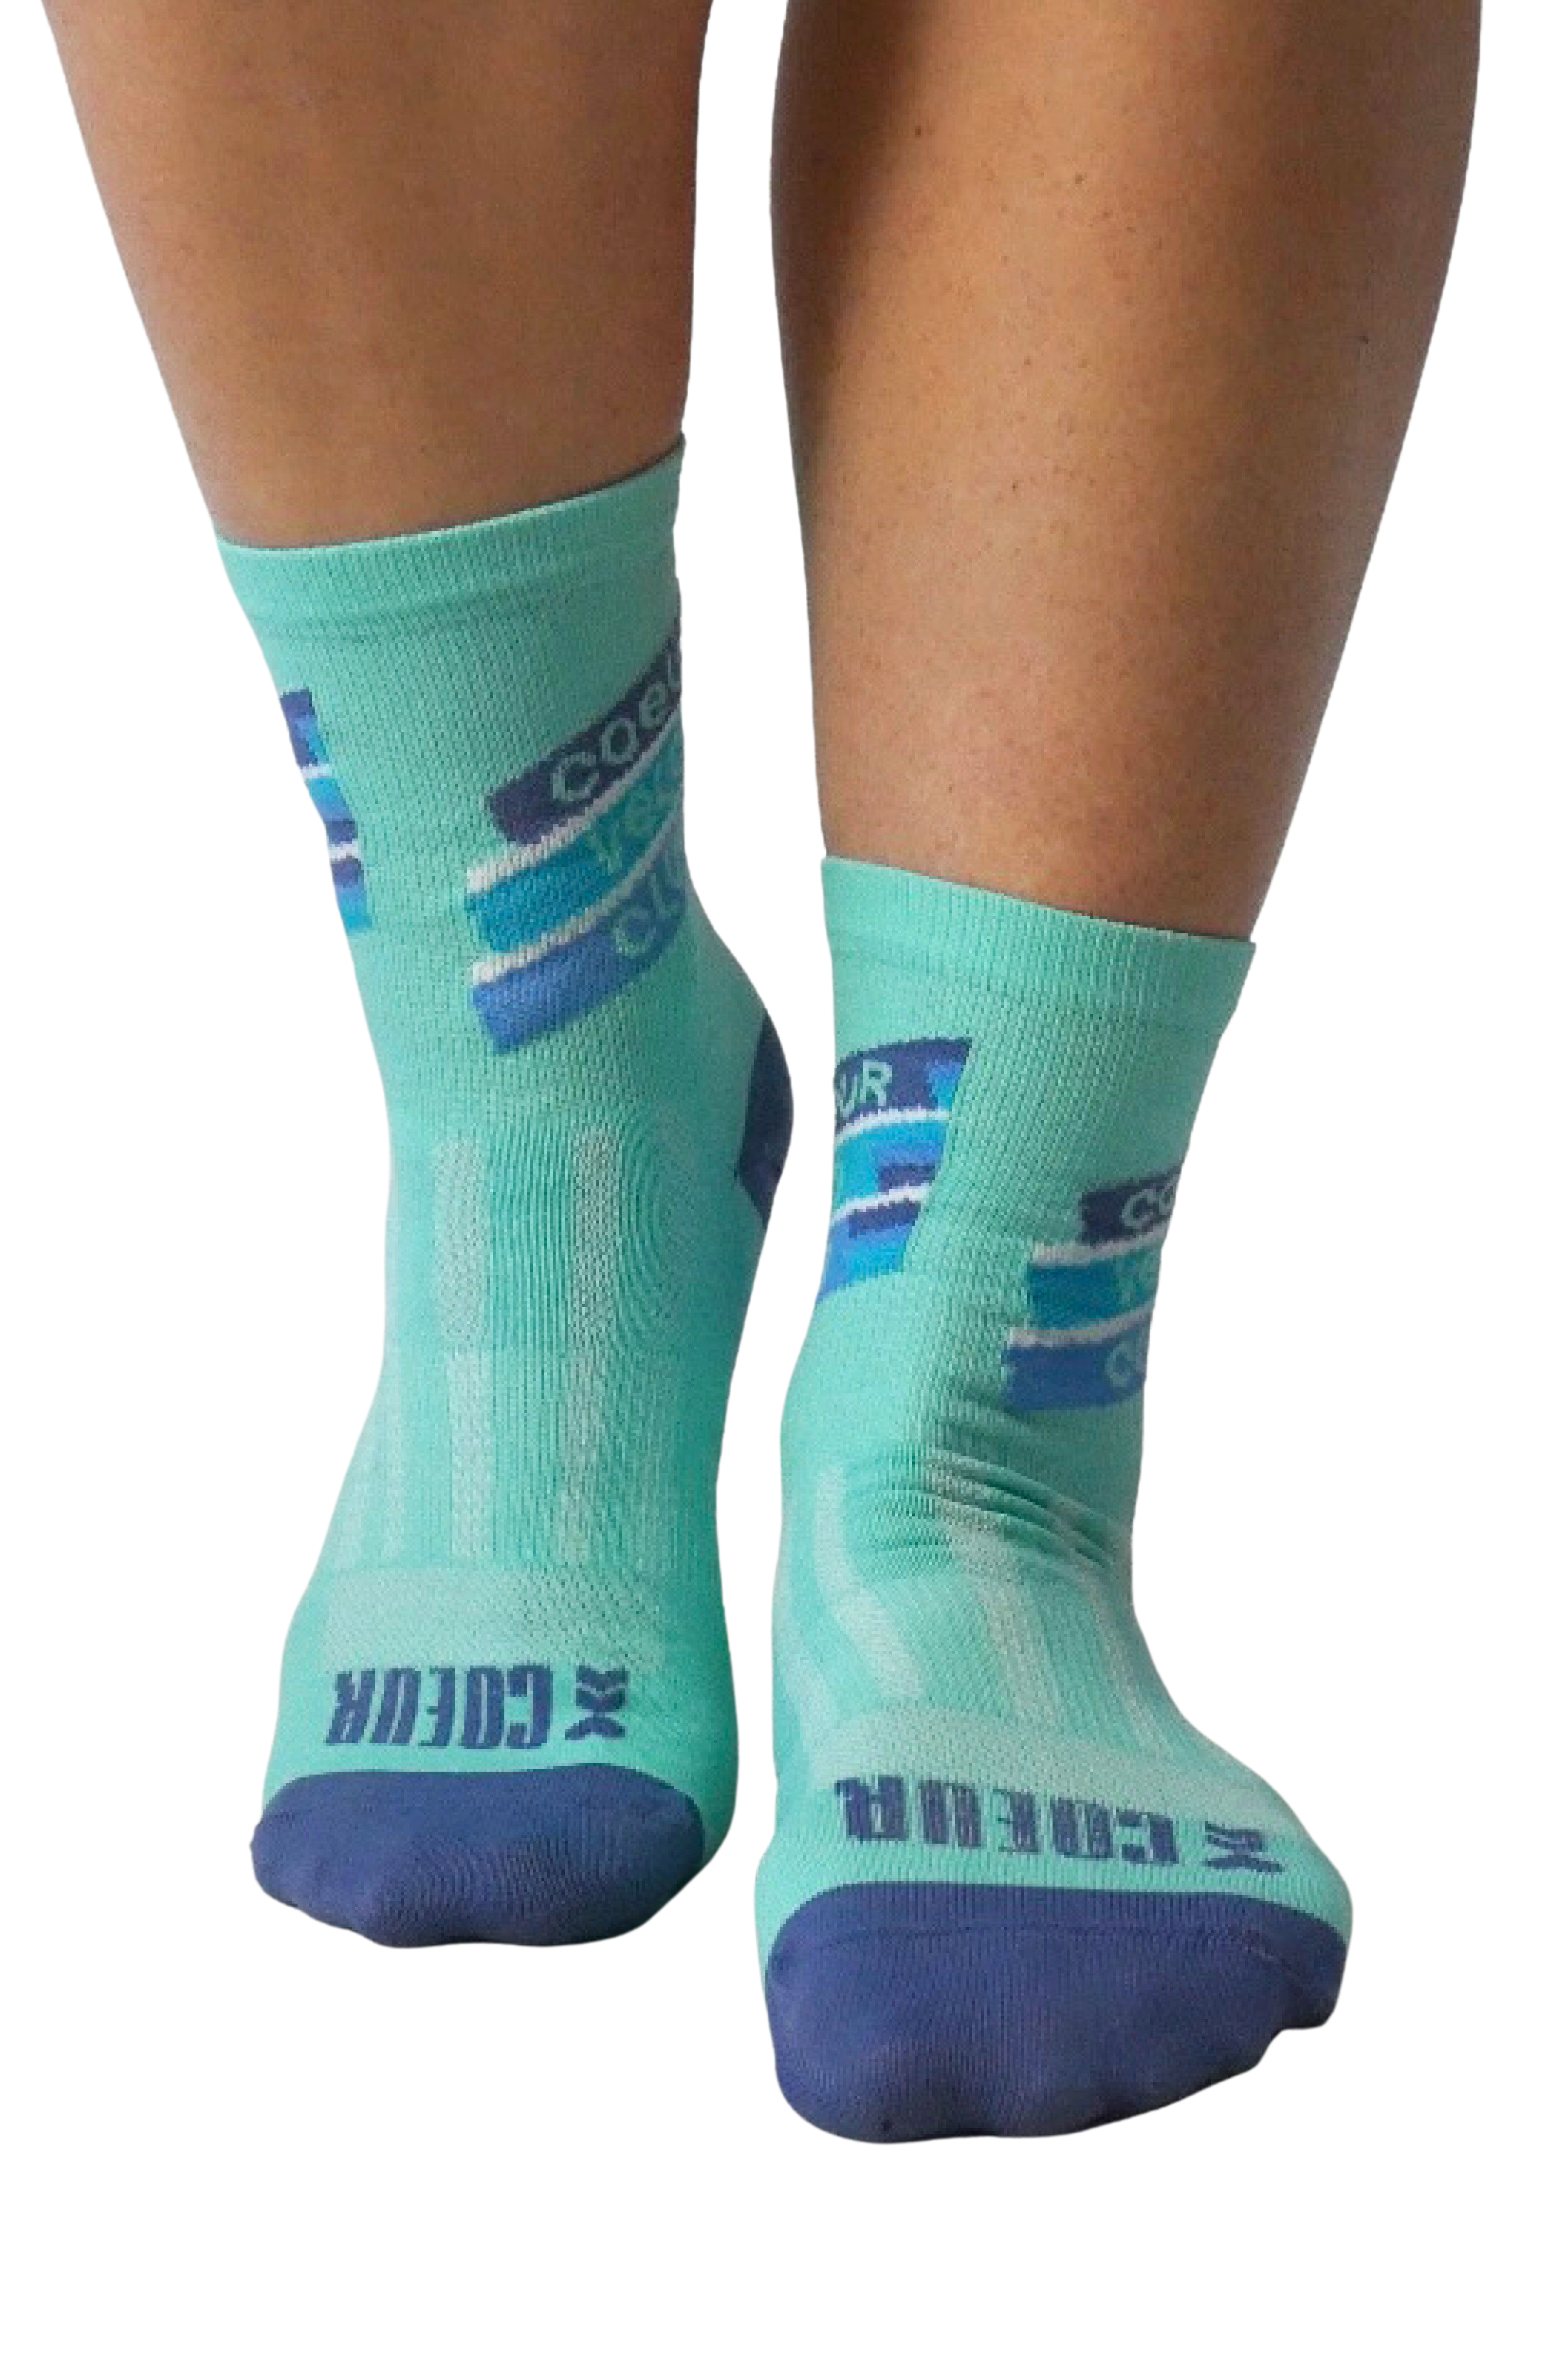 Coeur Sports Socks One Size / blue Coeur Velo Virtual Cycling Club Socks